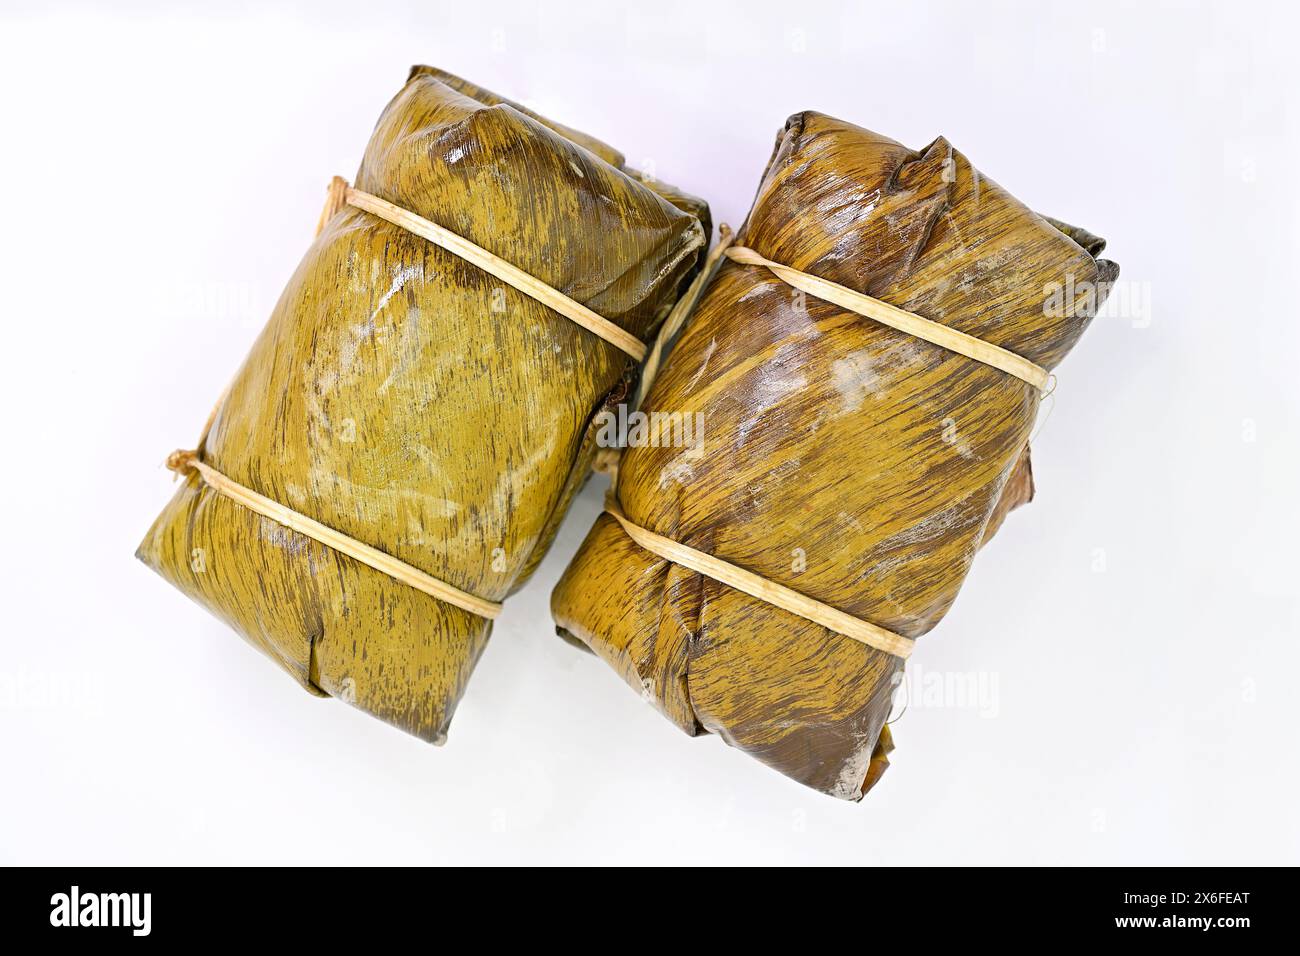 Il Khao tom mat è un popolare dolce tailandese composto da riso appiccicoso, banana matura, latte di cocco, avvolto e cotto a vapore in foglie di banana. Foto Stock